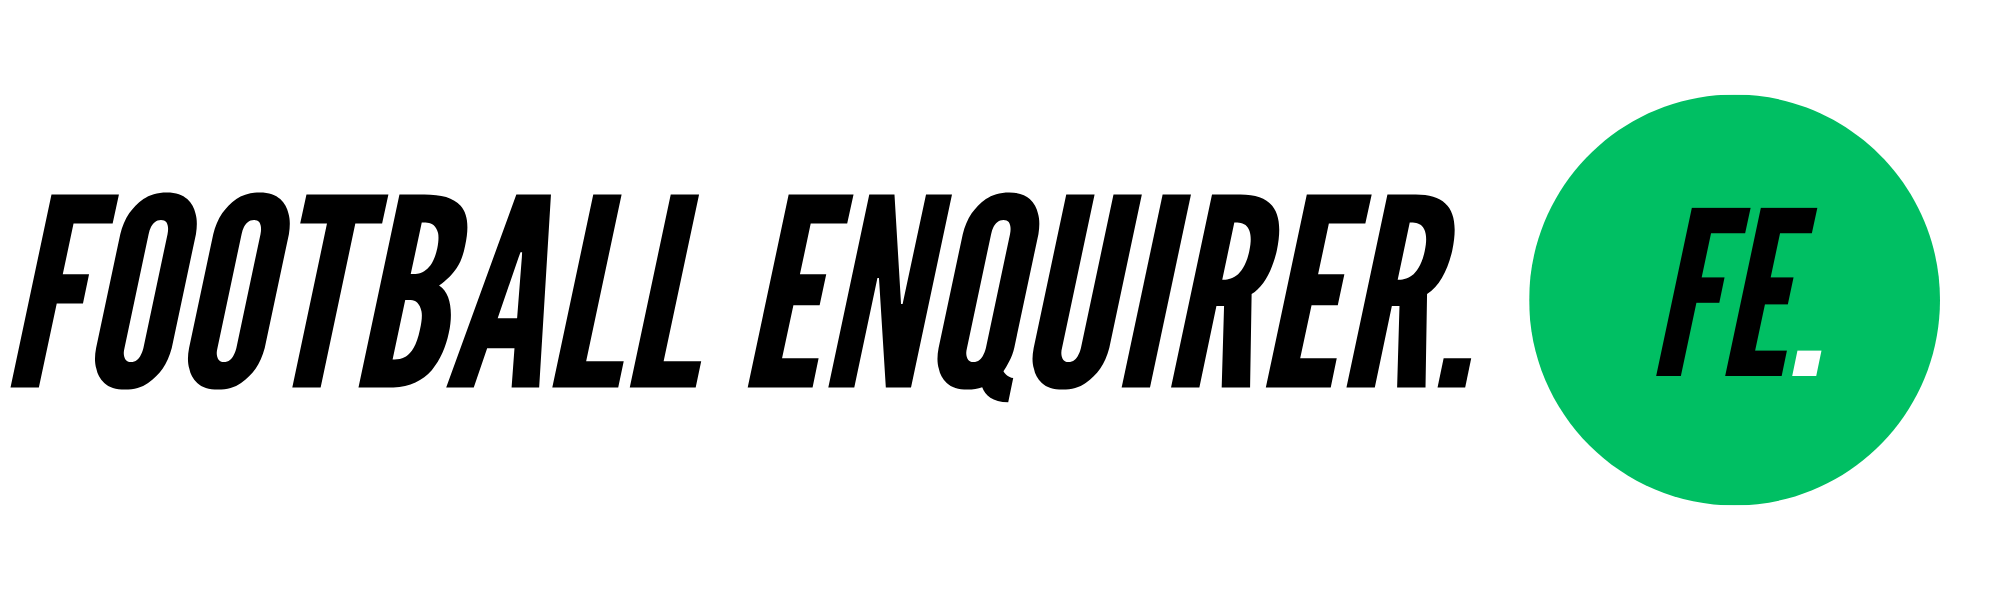 Football Enquirer 